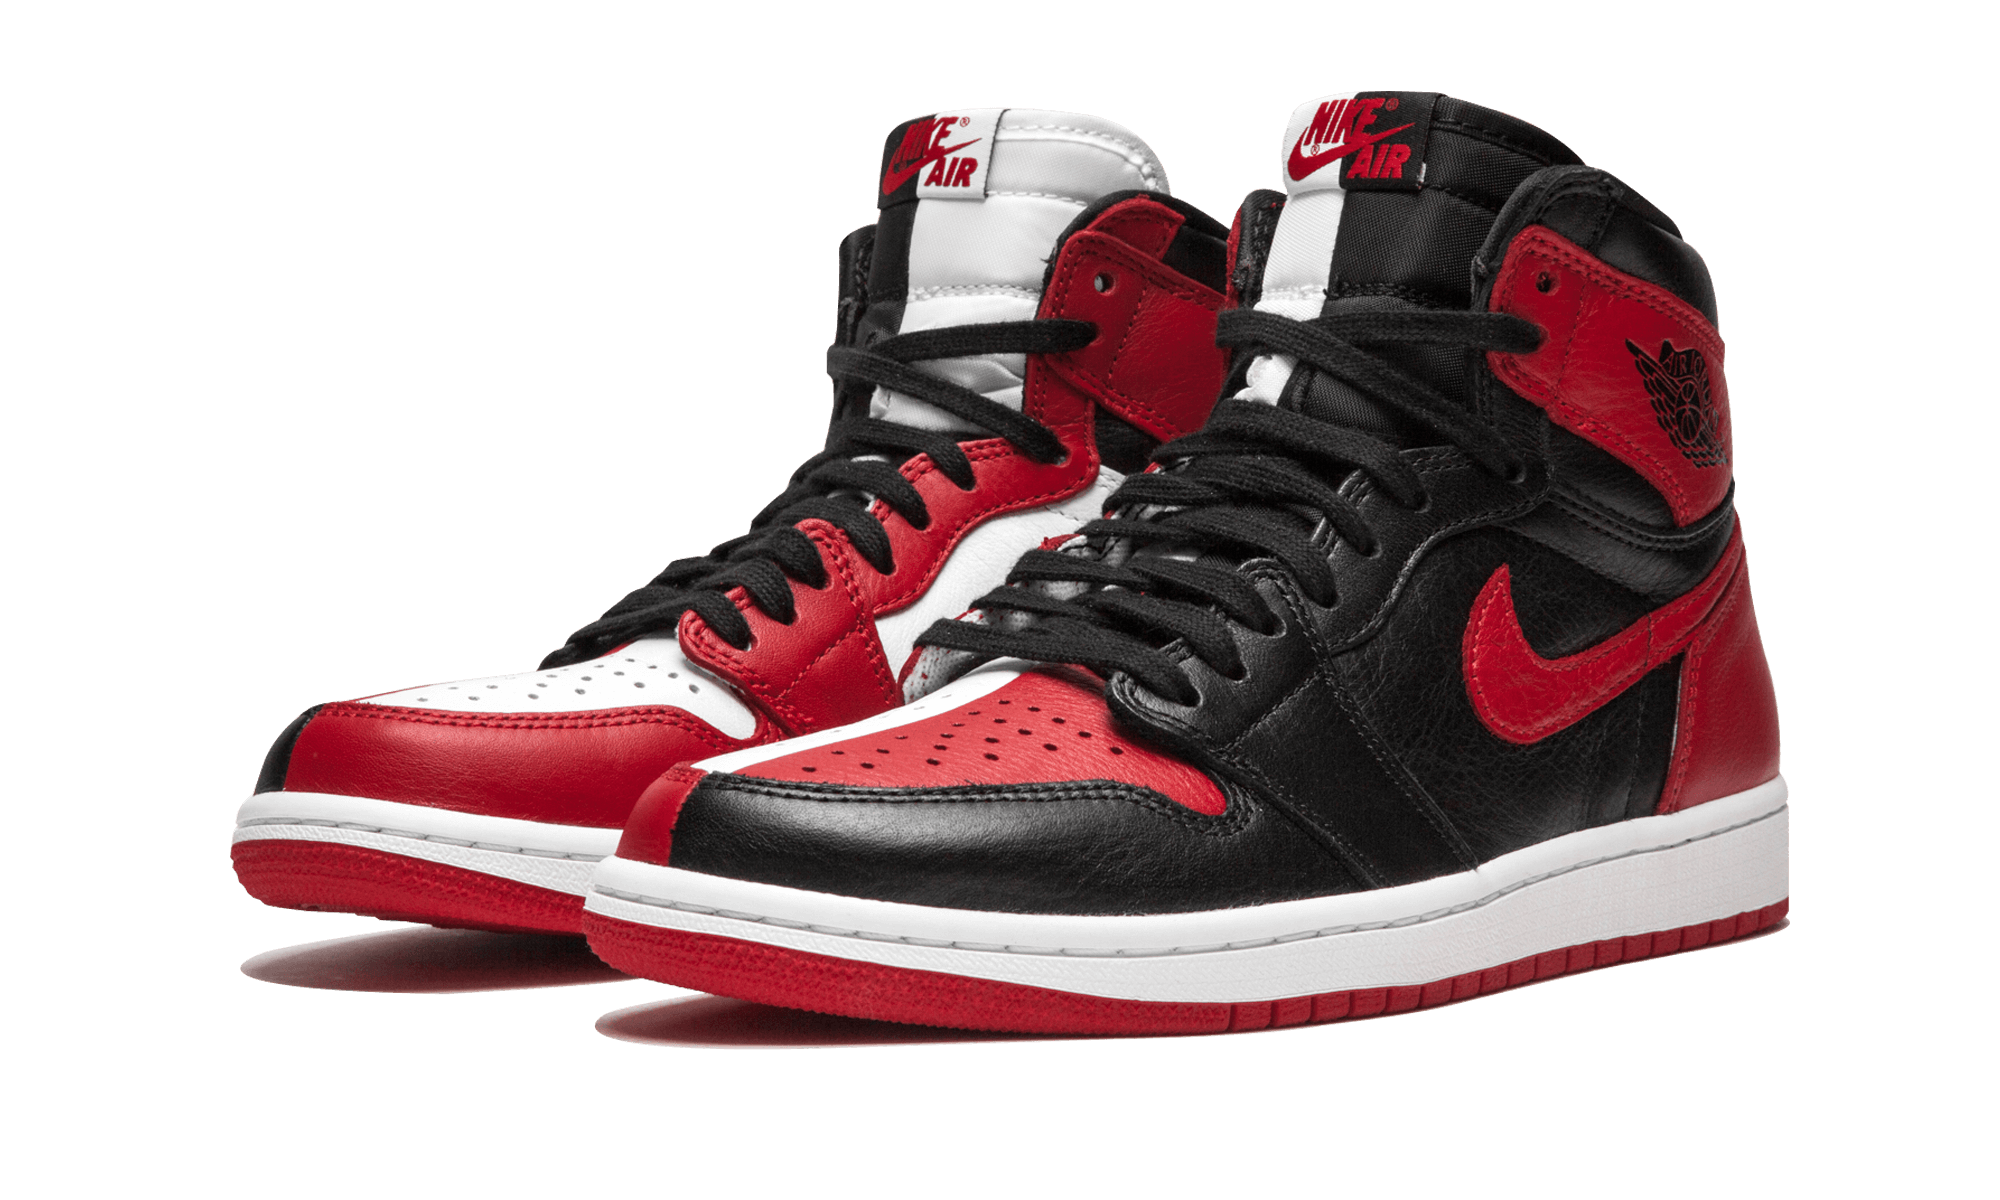 Jordan high. Nike Air Jordan 1 Retro High og NRG. Nike Air Jordan 1 High. Nike Air Jordan 1 Red. Air Jordan 1 High og.